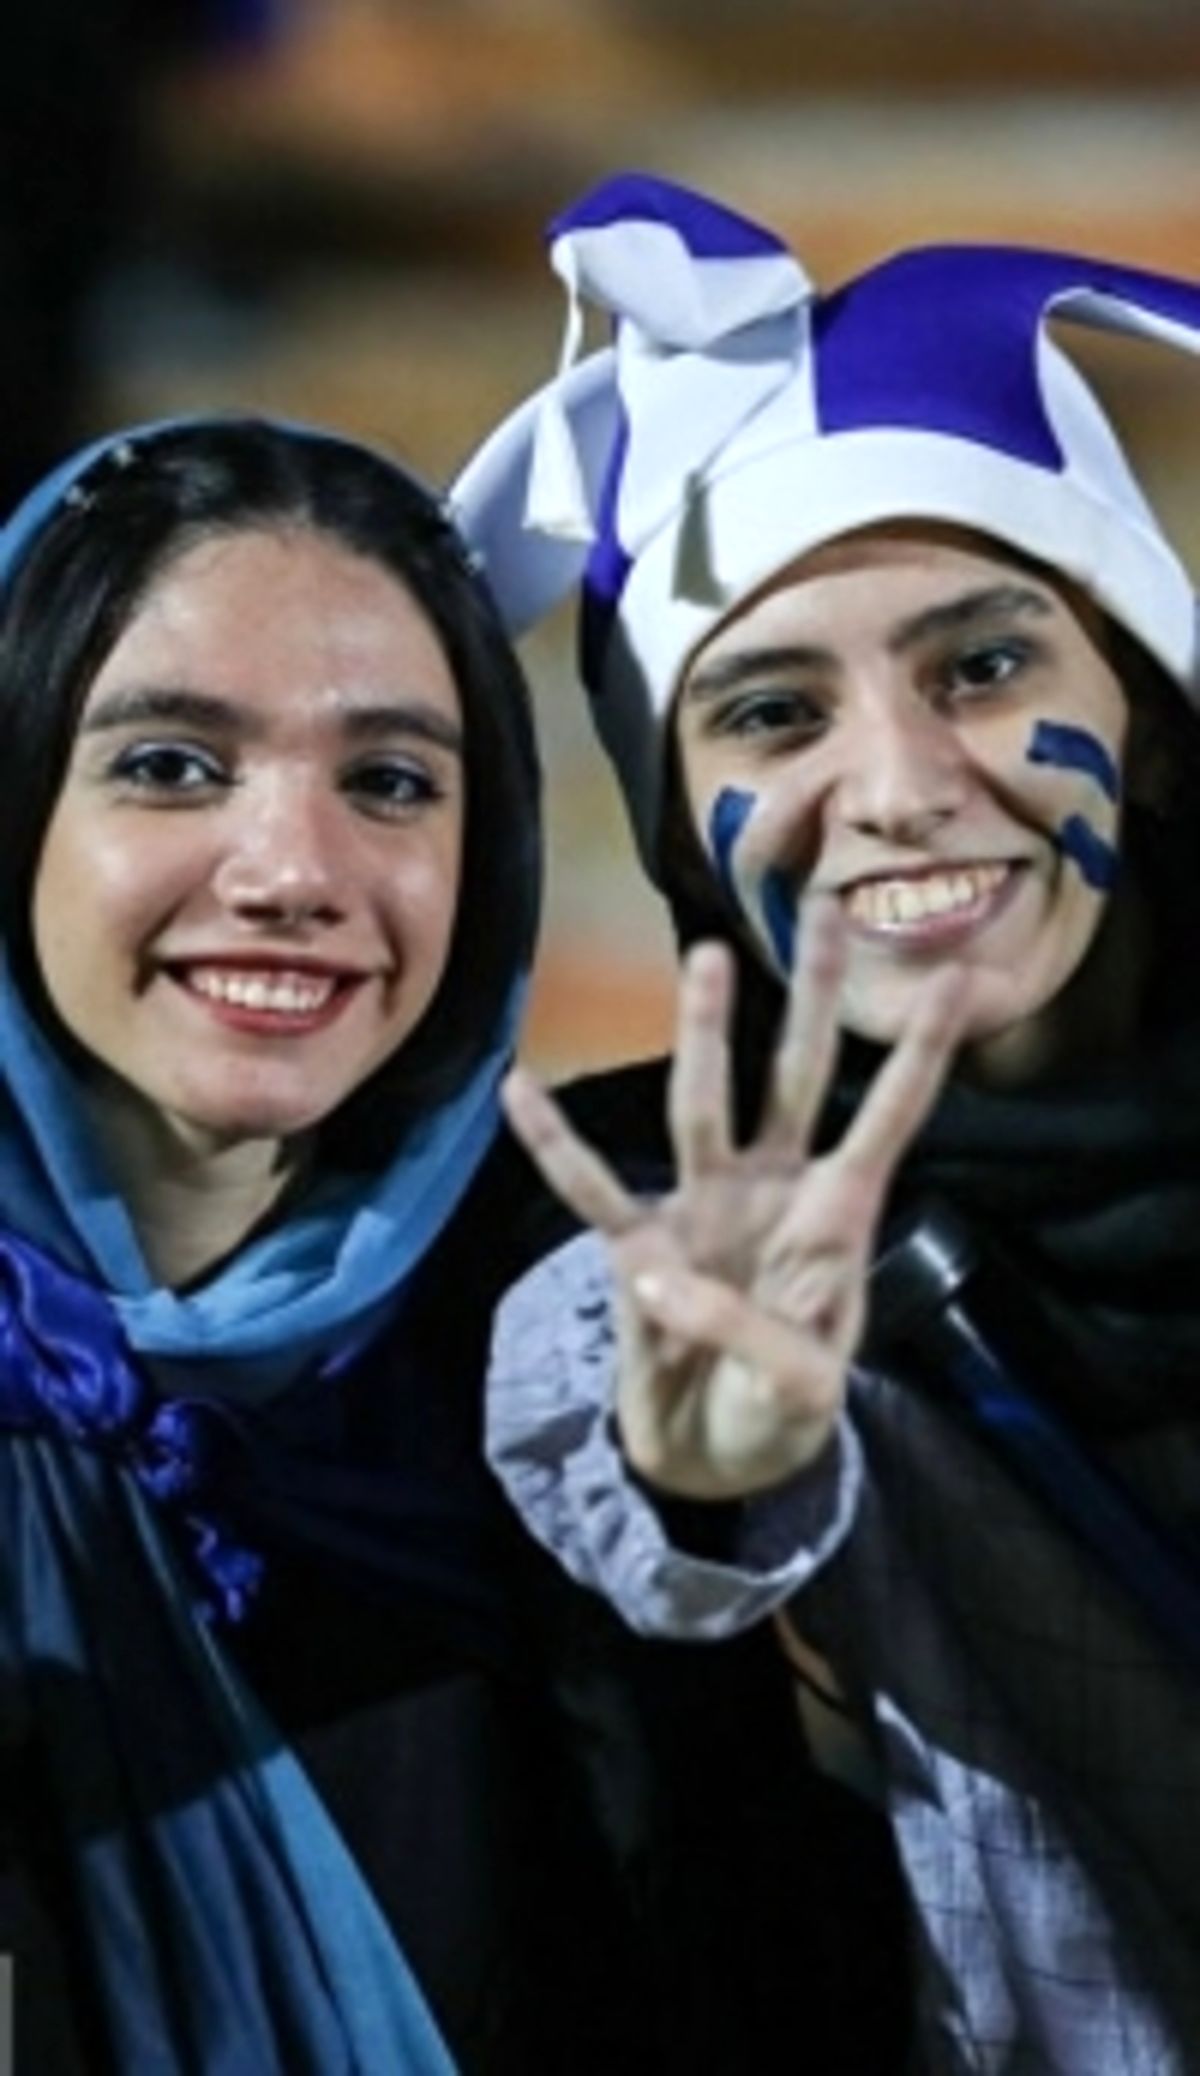 منتقدان حضور زنان در ورزشگاه سکوت کردند/ اگر روحانی و خاتمی رئیس جمهور بودند، کفن پوشان مشهد فریاد وااسلاما سر می دادند